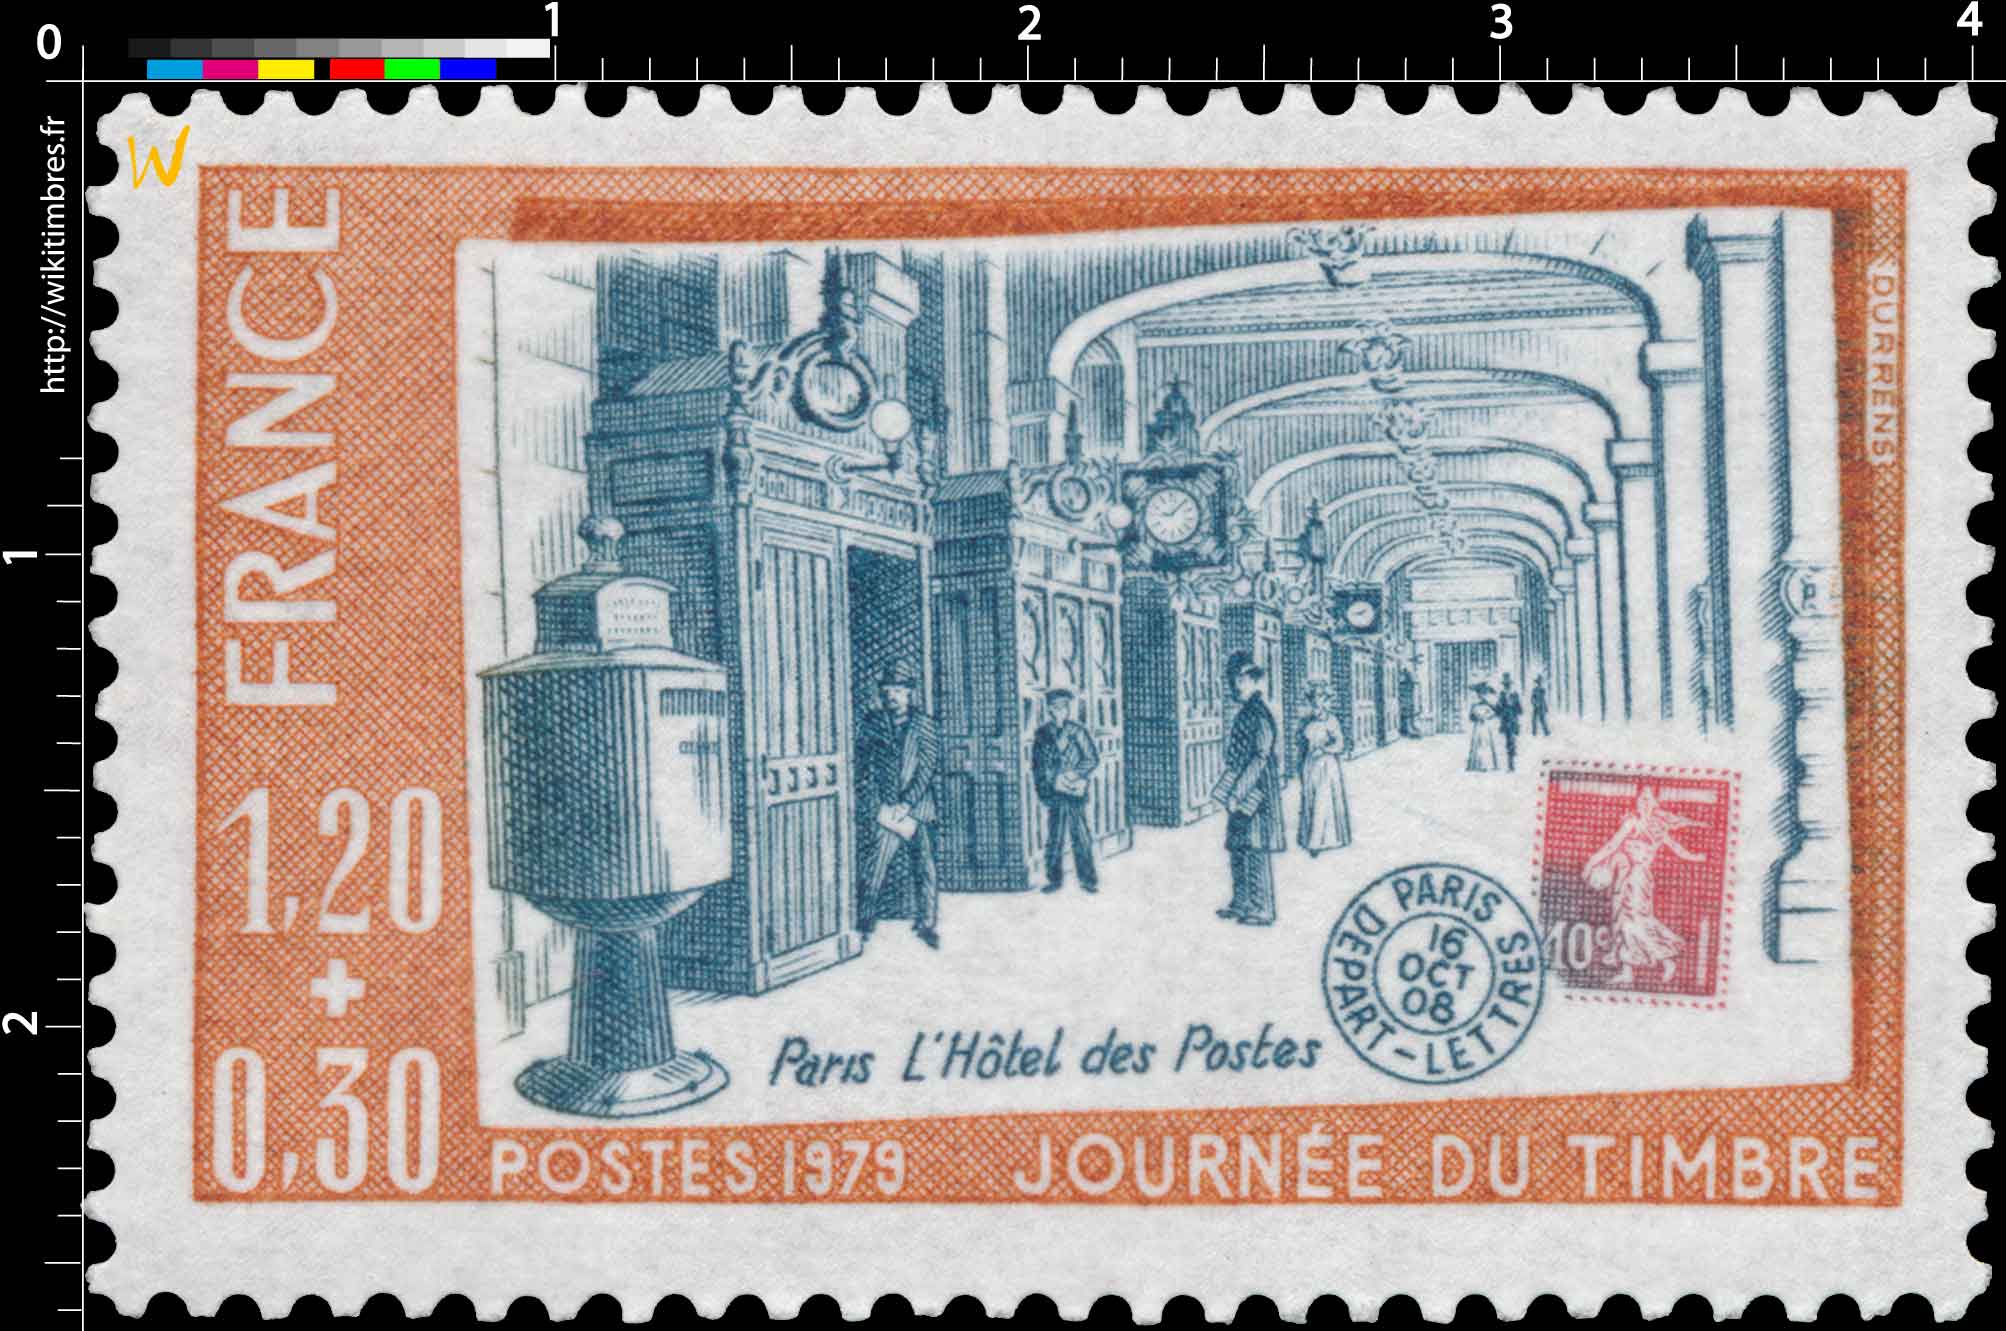 1979 JOURNÉE DU TIMBRE Paris l'Hôtel des Postes 16 OCT. 08 PARIS DÉPART - LETTRE